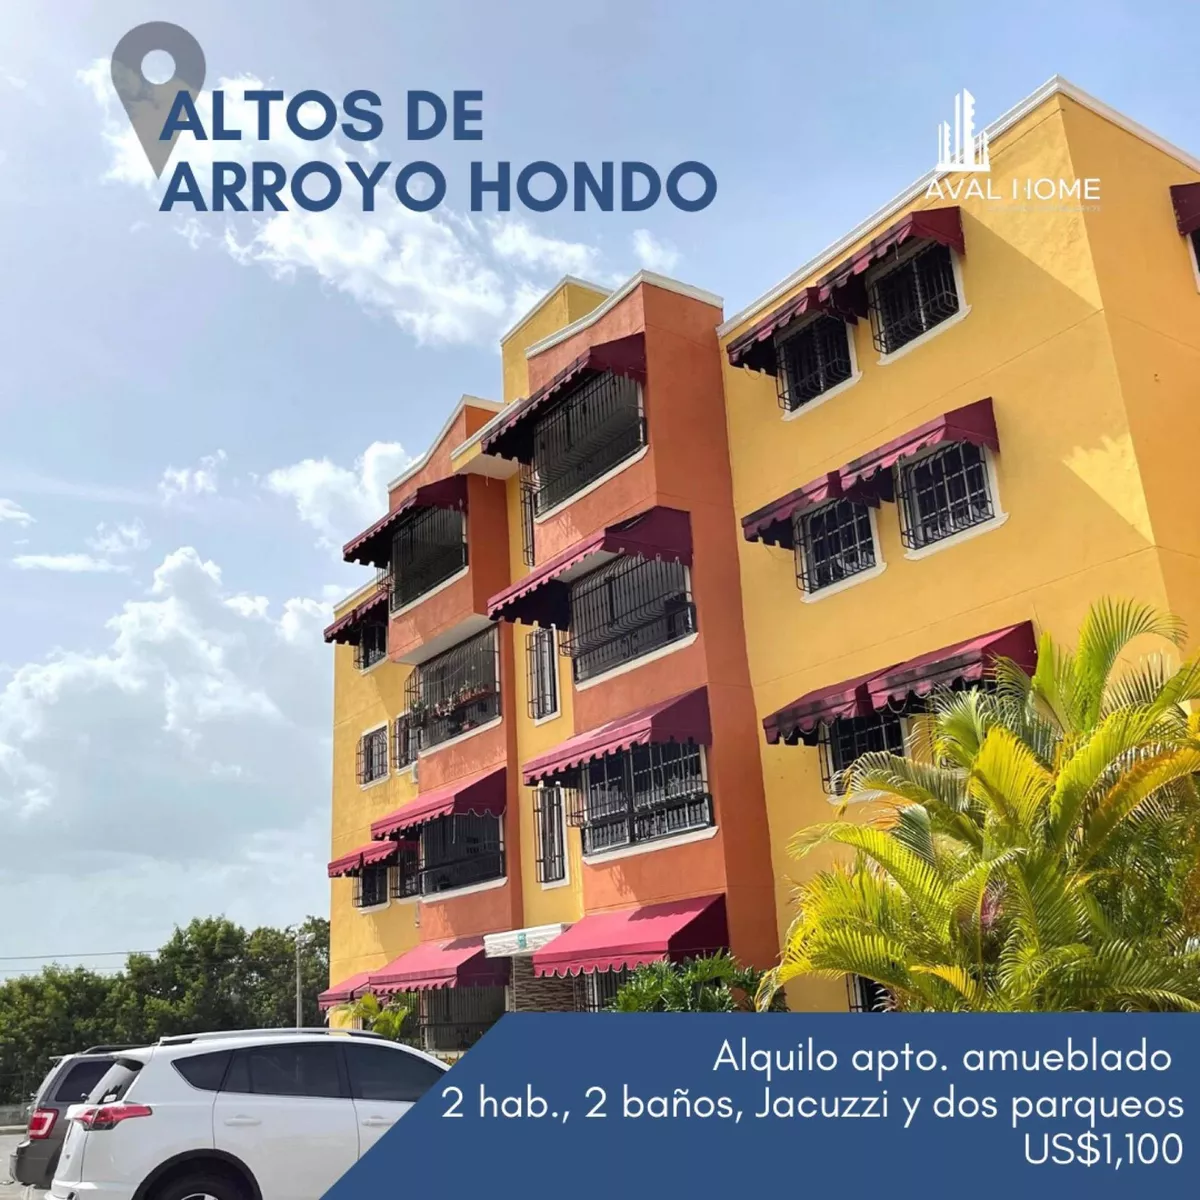 Aquilo Apartamento En Altos De Arroyo Hondo.